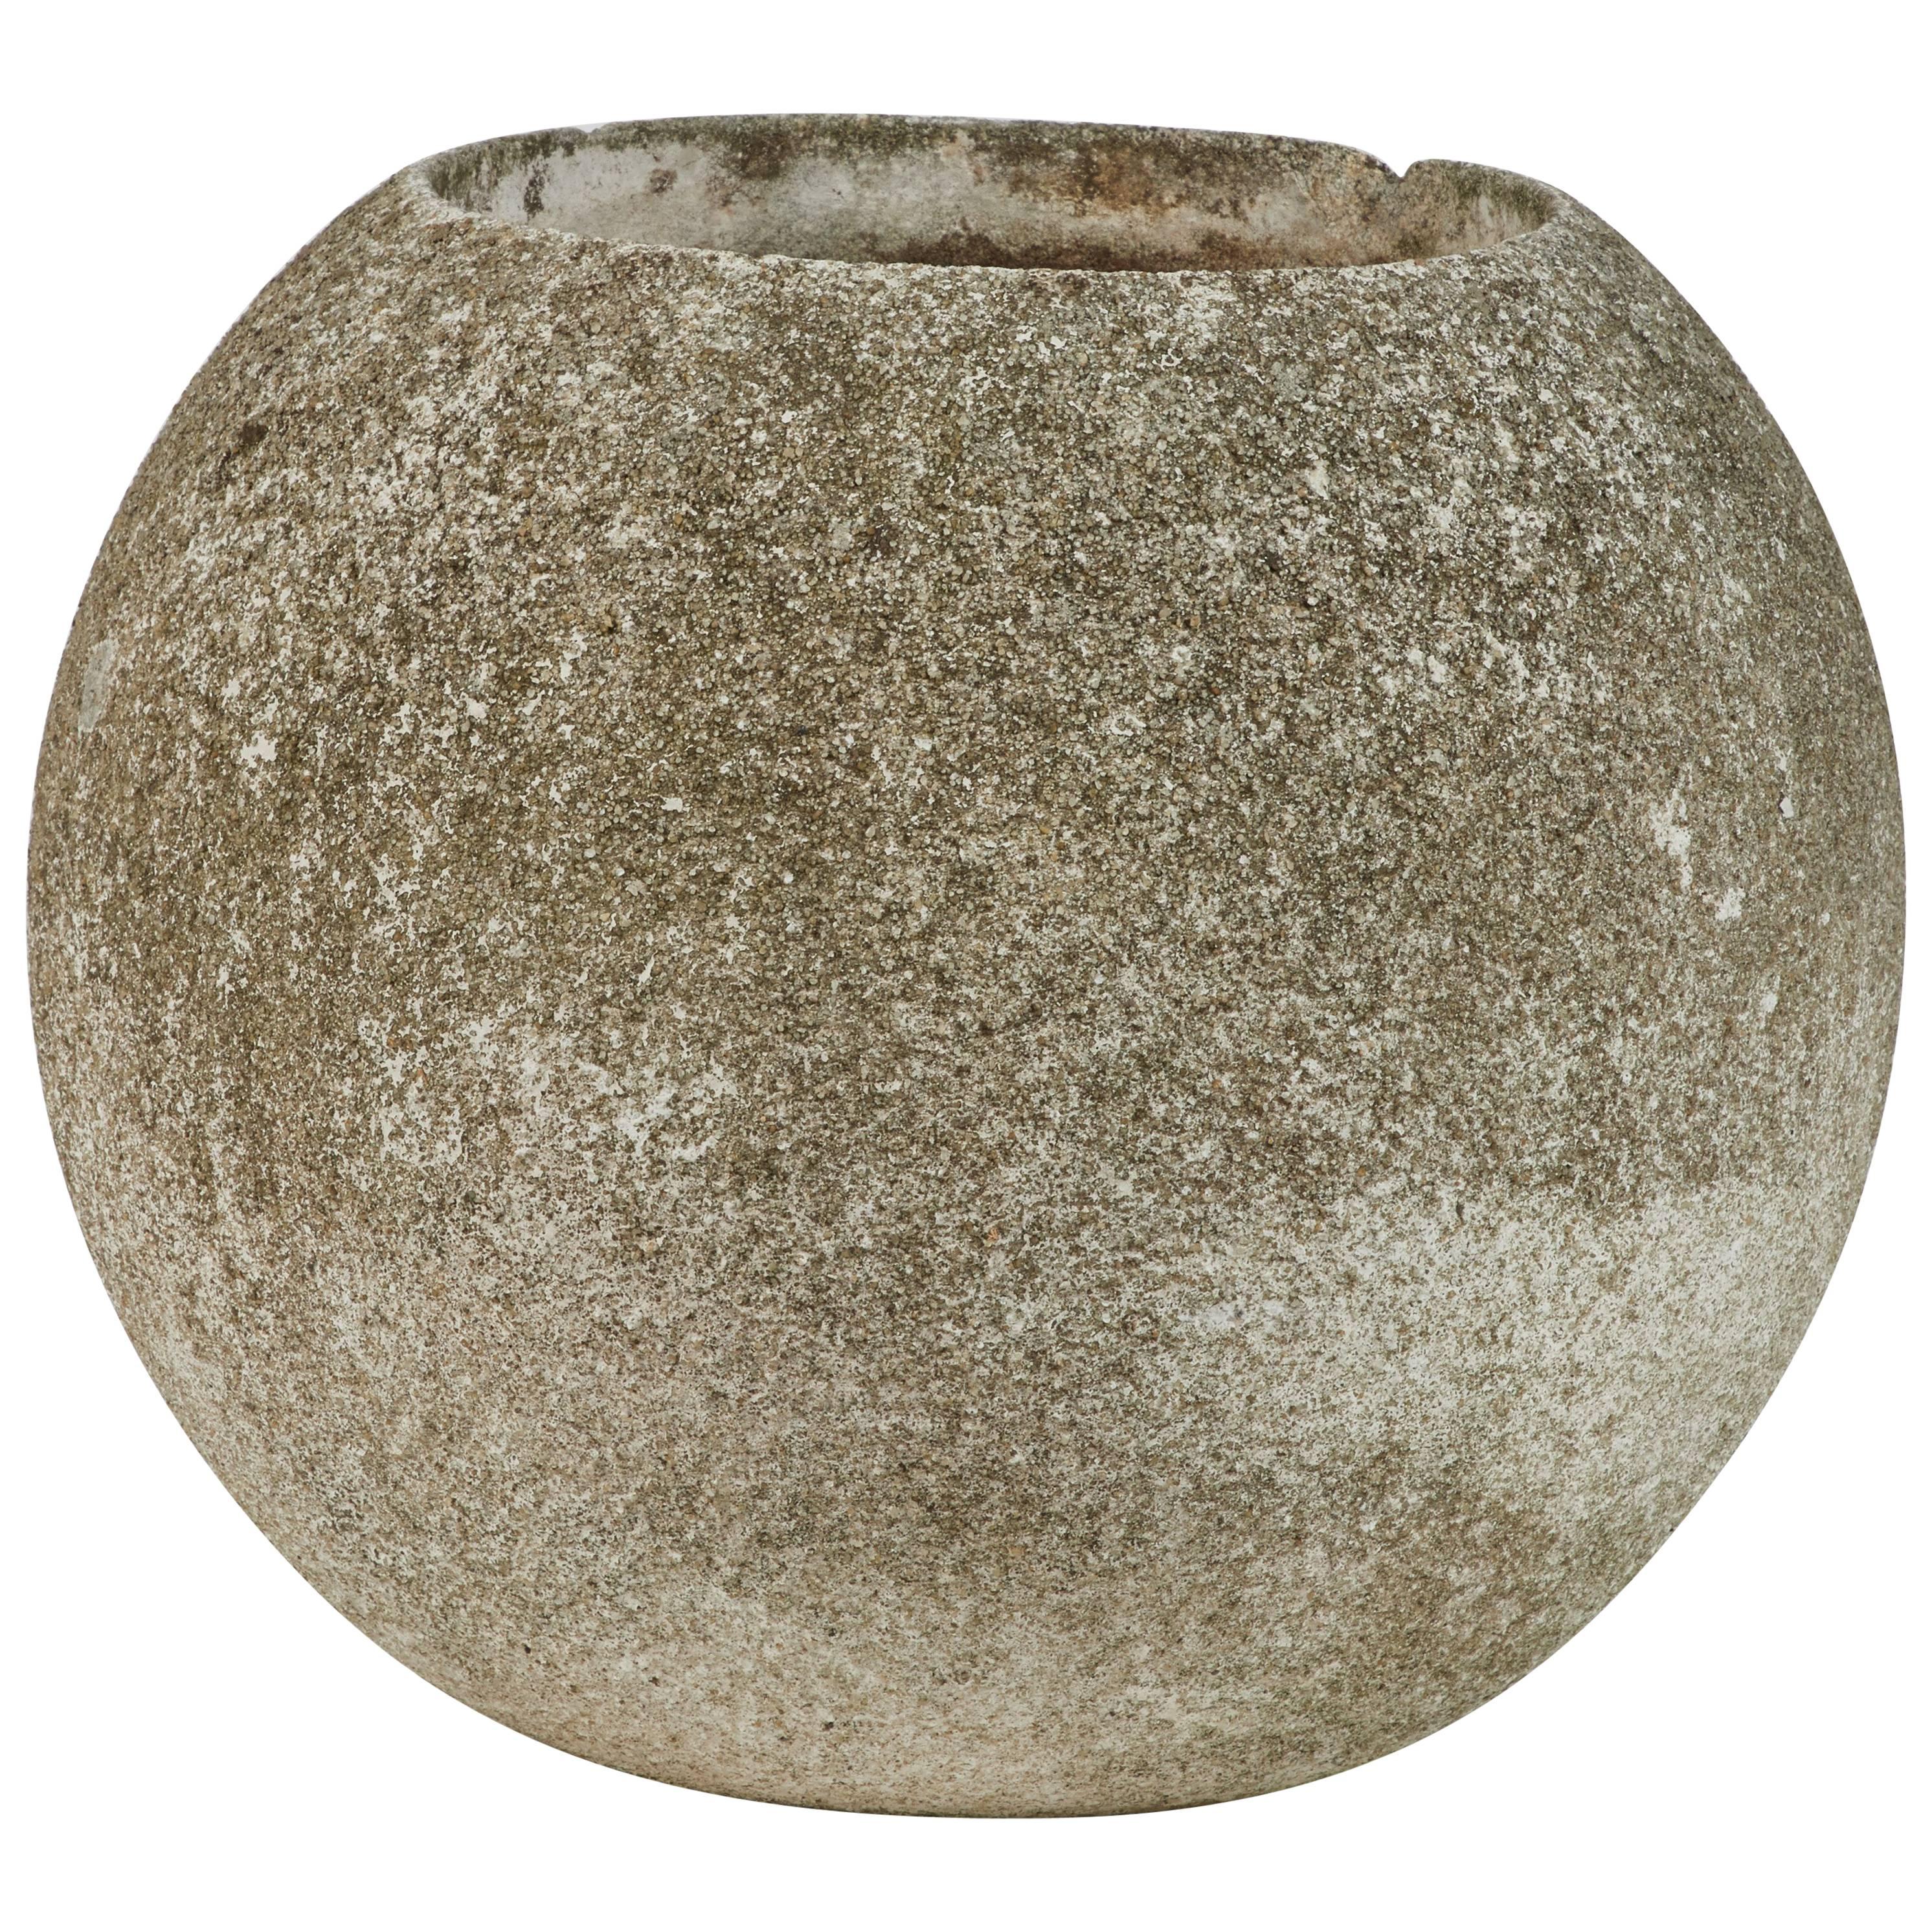 Concrete Round Urn